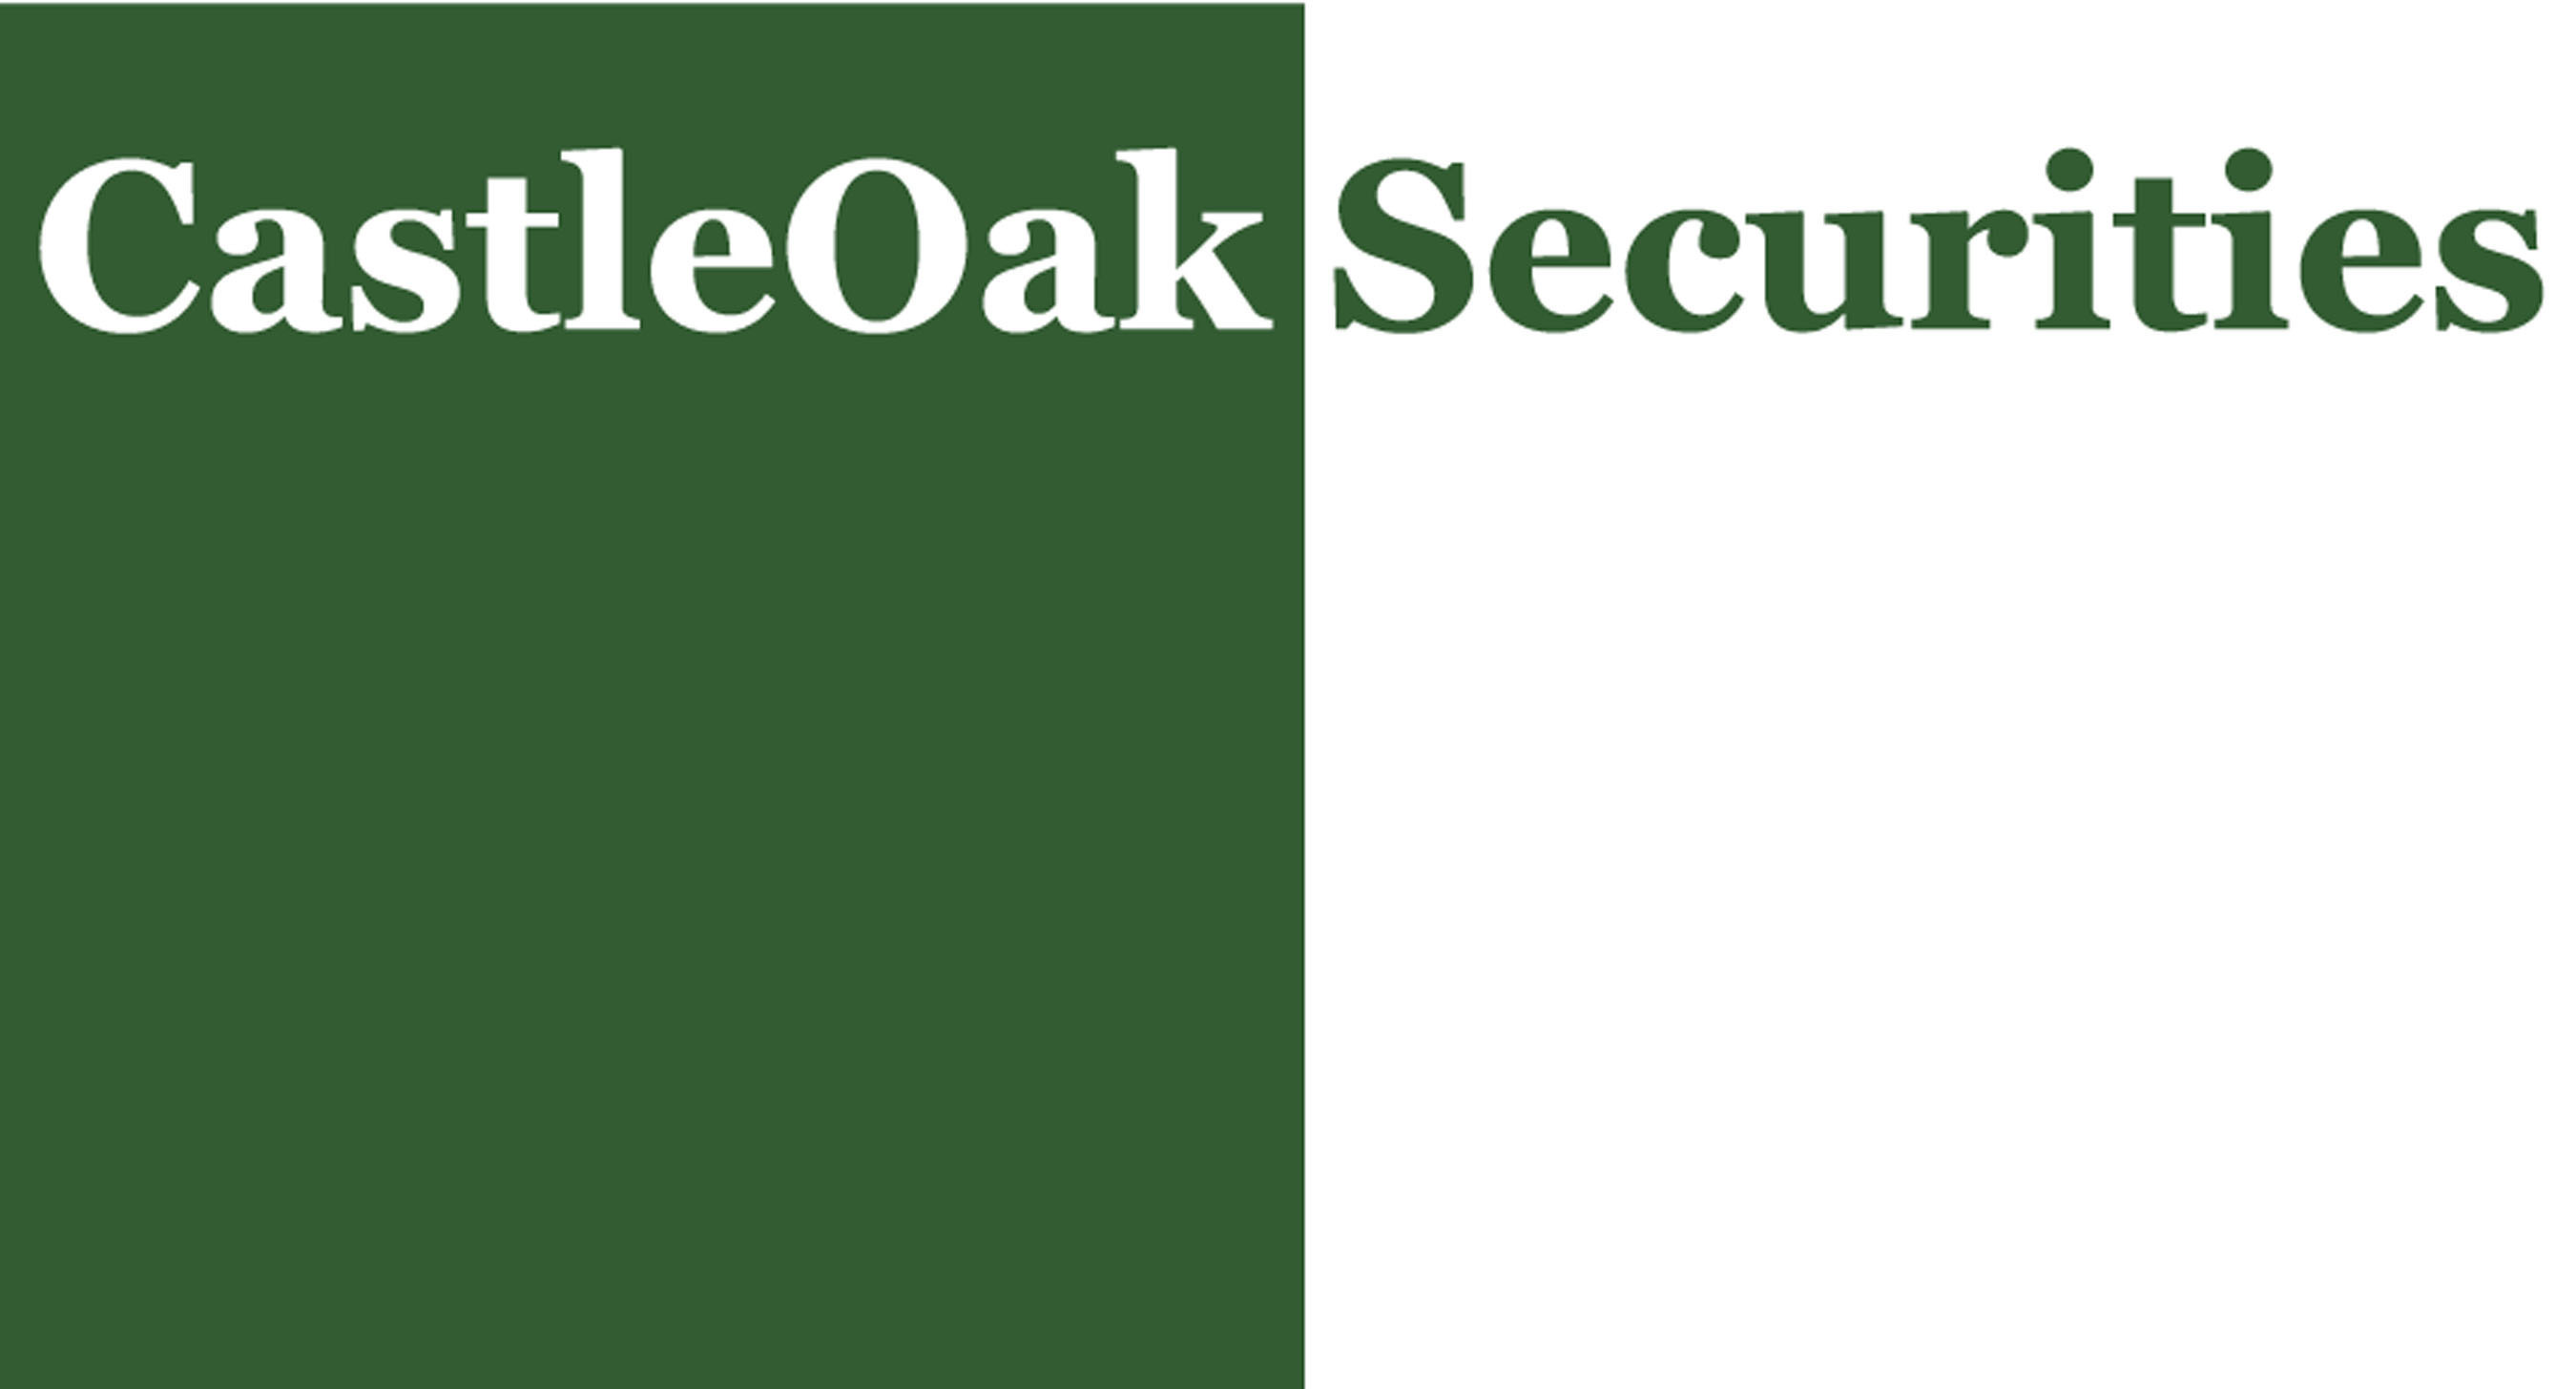 CastleOak Securities Logo. (PRNewsFoto/Cantor Fitzgerald) (PRNewsFoto/CANTOR FITZGERALD)